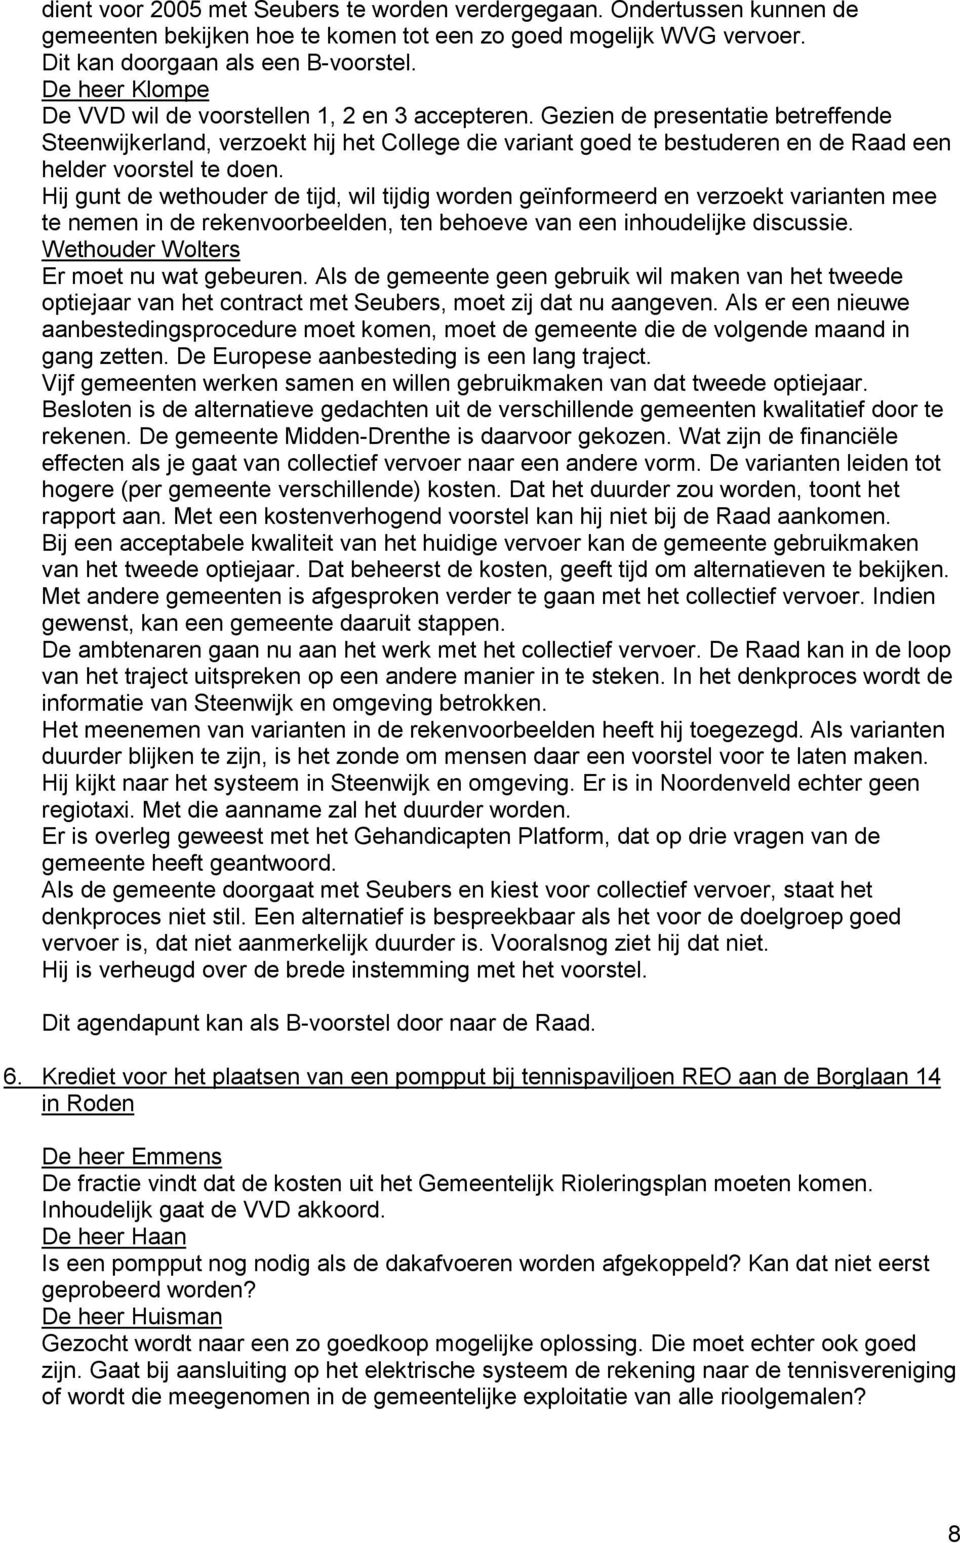 Gezien de presentatie betreffende Steenwijkerland, verzoekt hij het College die variant goed te bestuderen en de Raad een helder voorstel te doen.